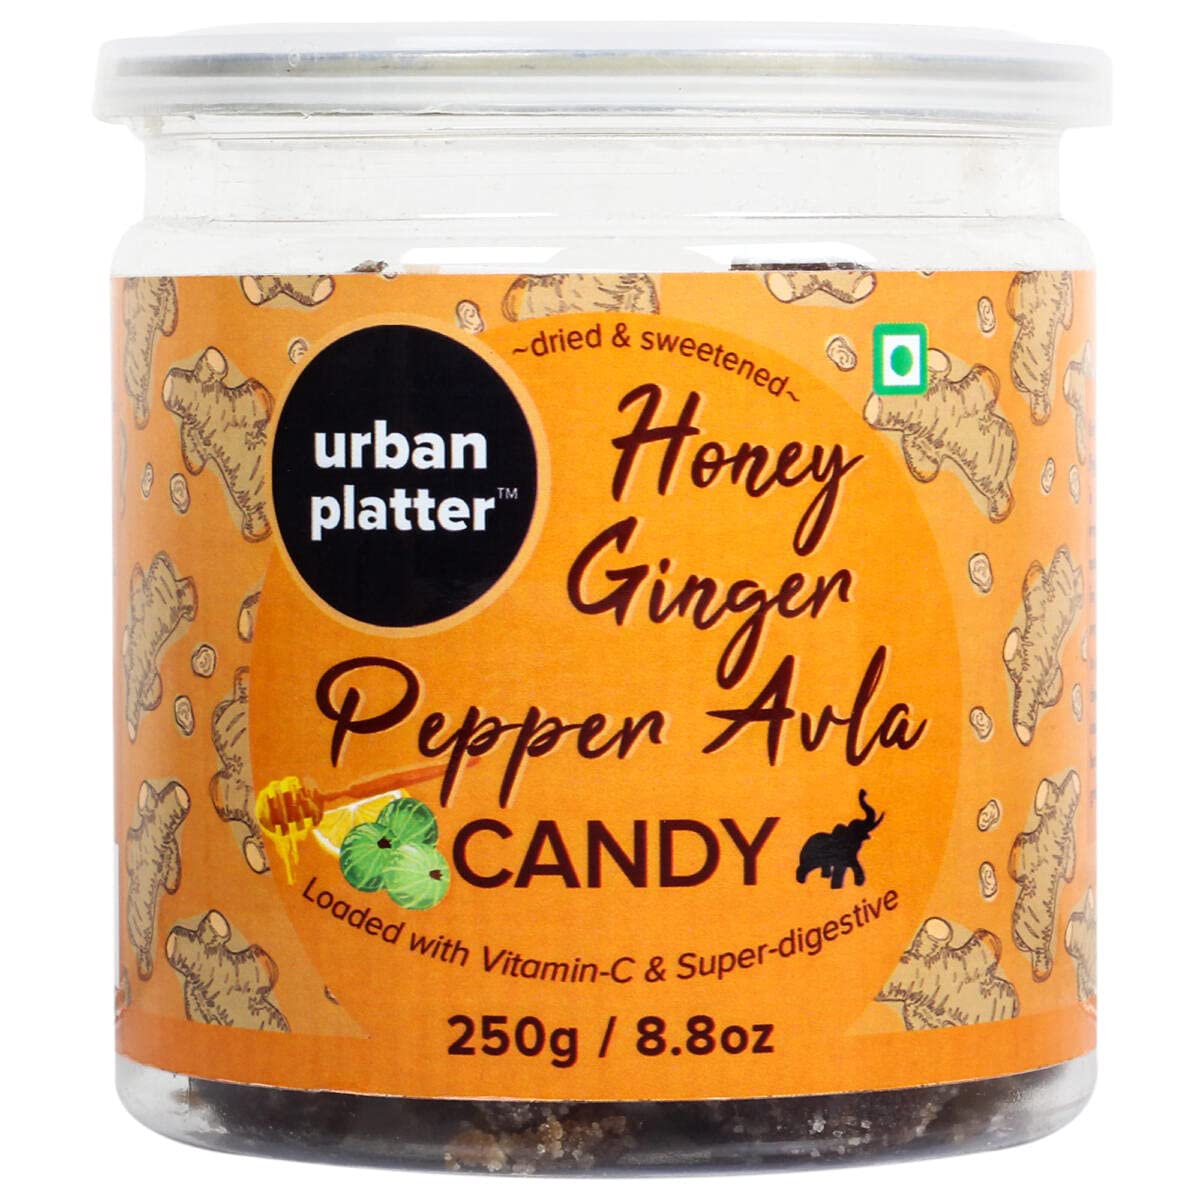 Urban Platter Honey Ginger Pepper Avla Candy Image